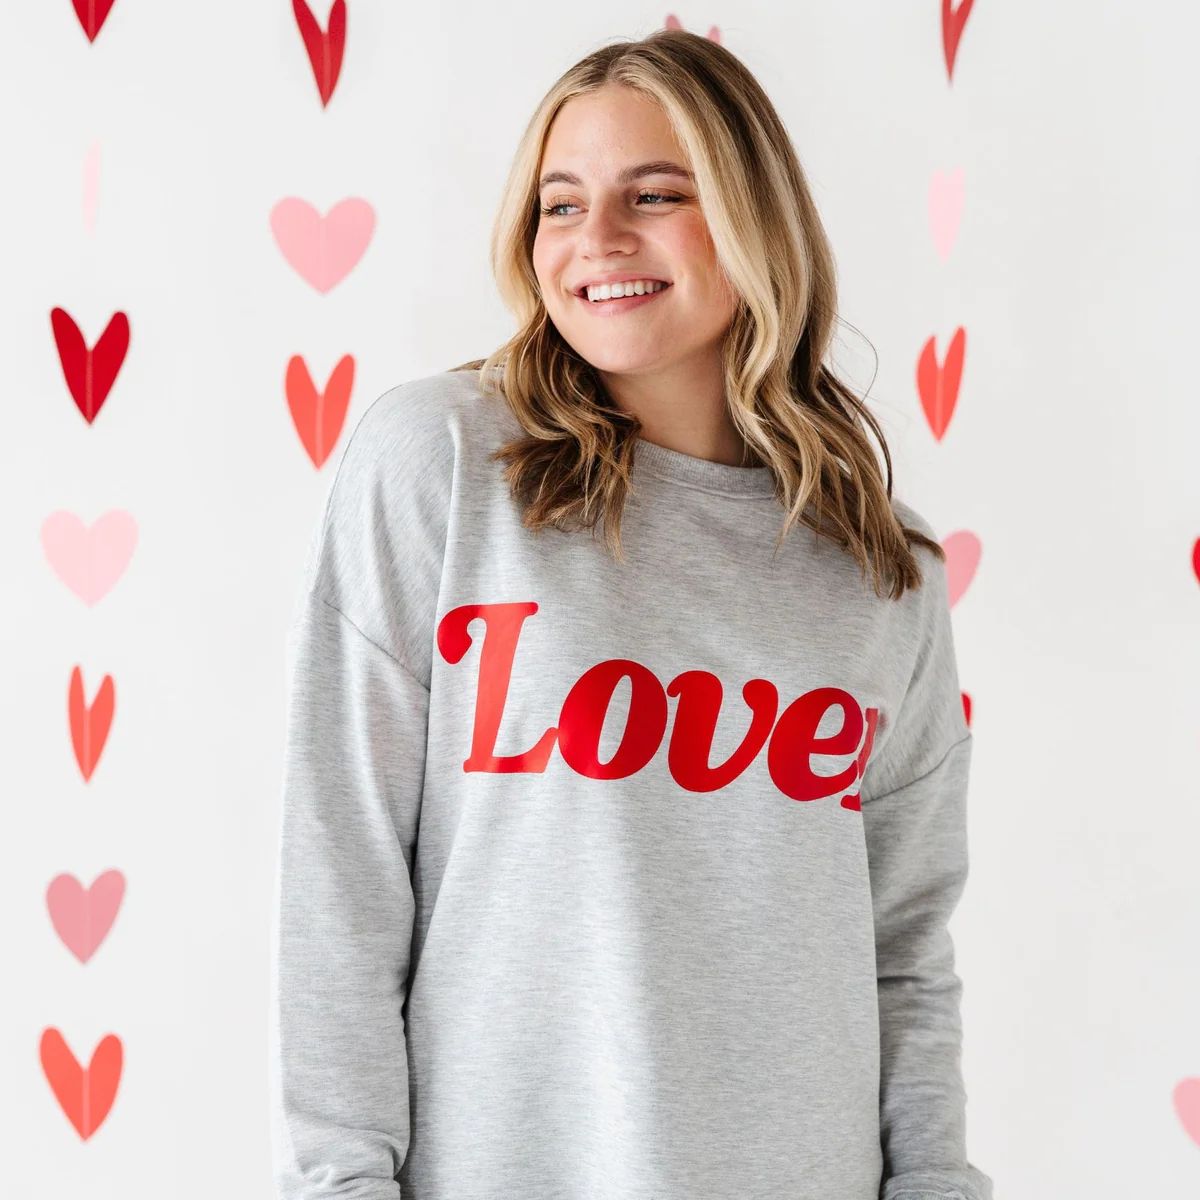 Lover Women's Crew Neck Sweatshirt | Bums & Roses